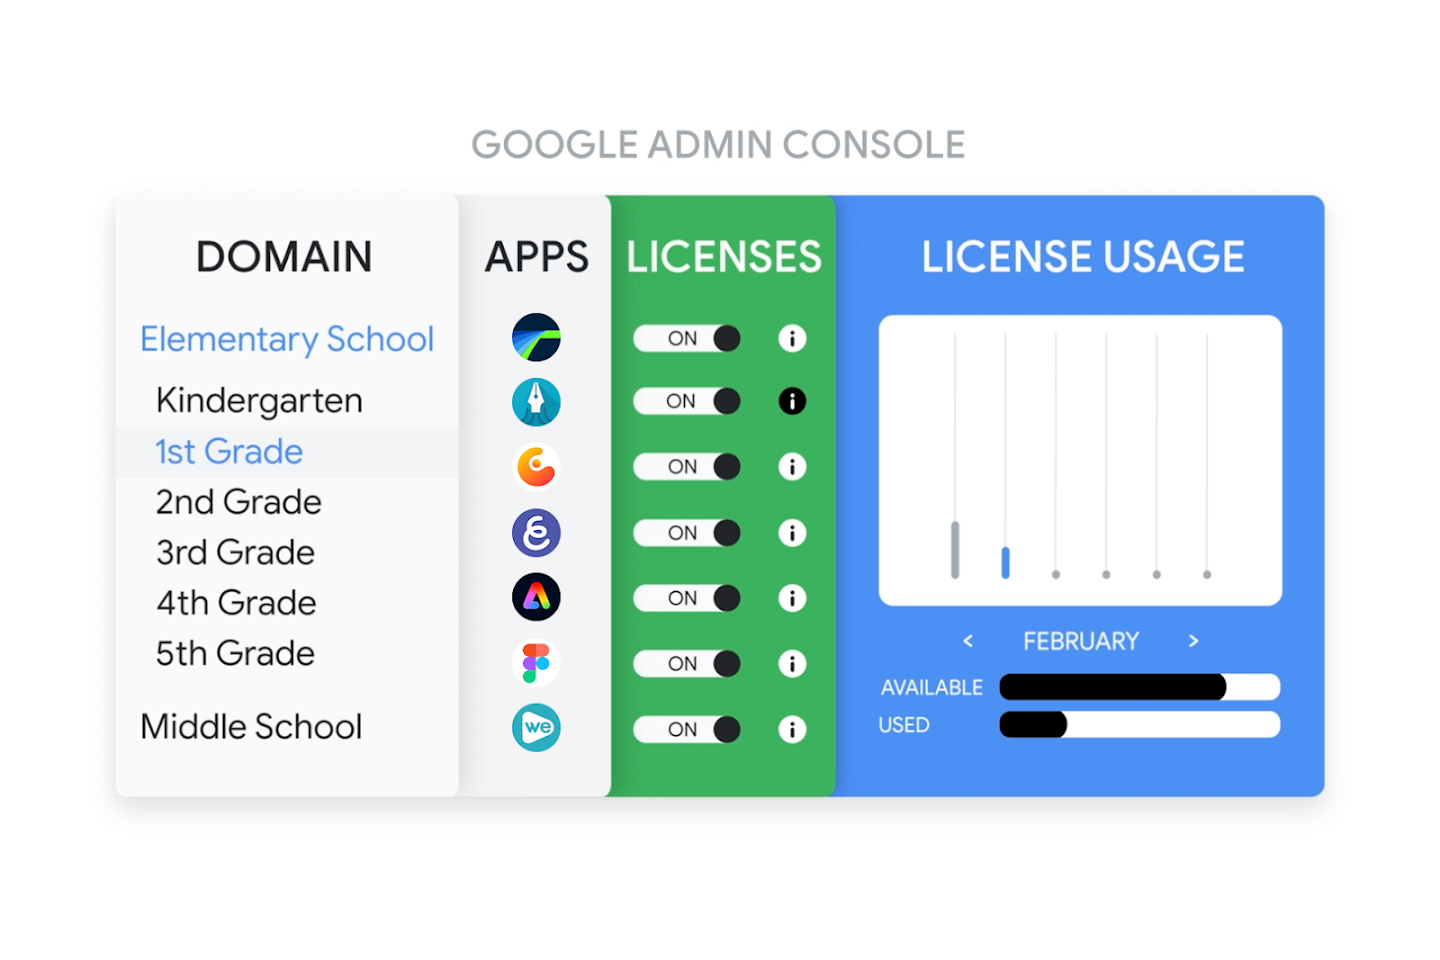 Google Yönetici Konsolu'nda uygulama lisansıyla birlikte öğrencilere sunulan uygulamaların yer aldığı görsel